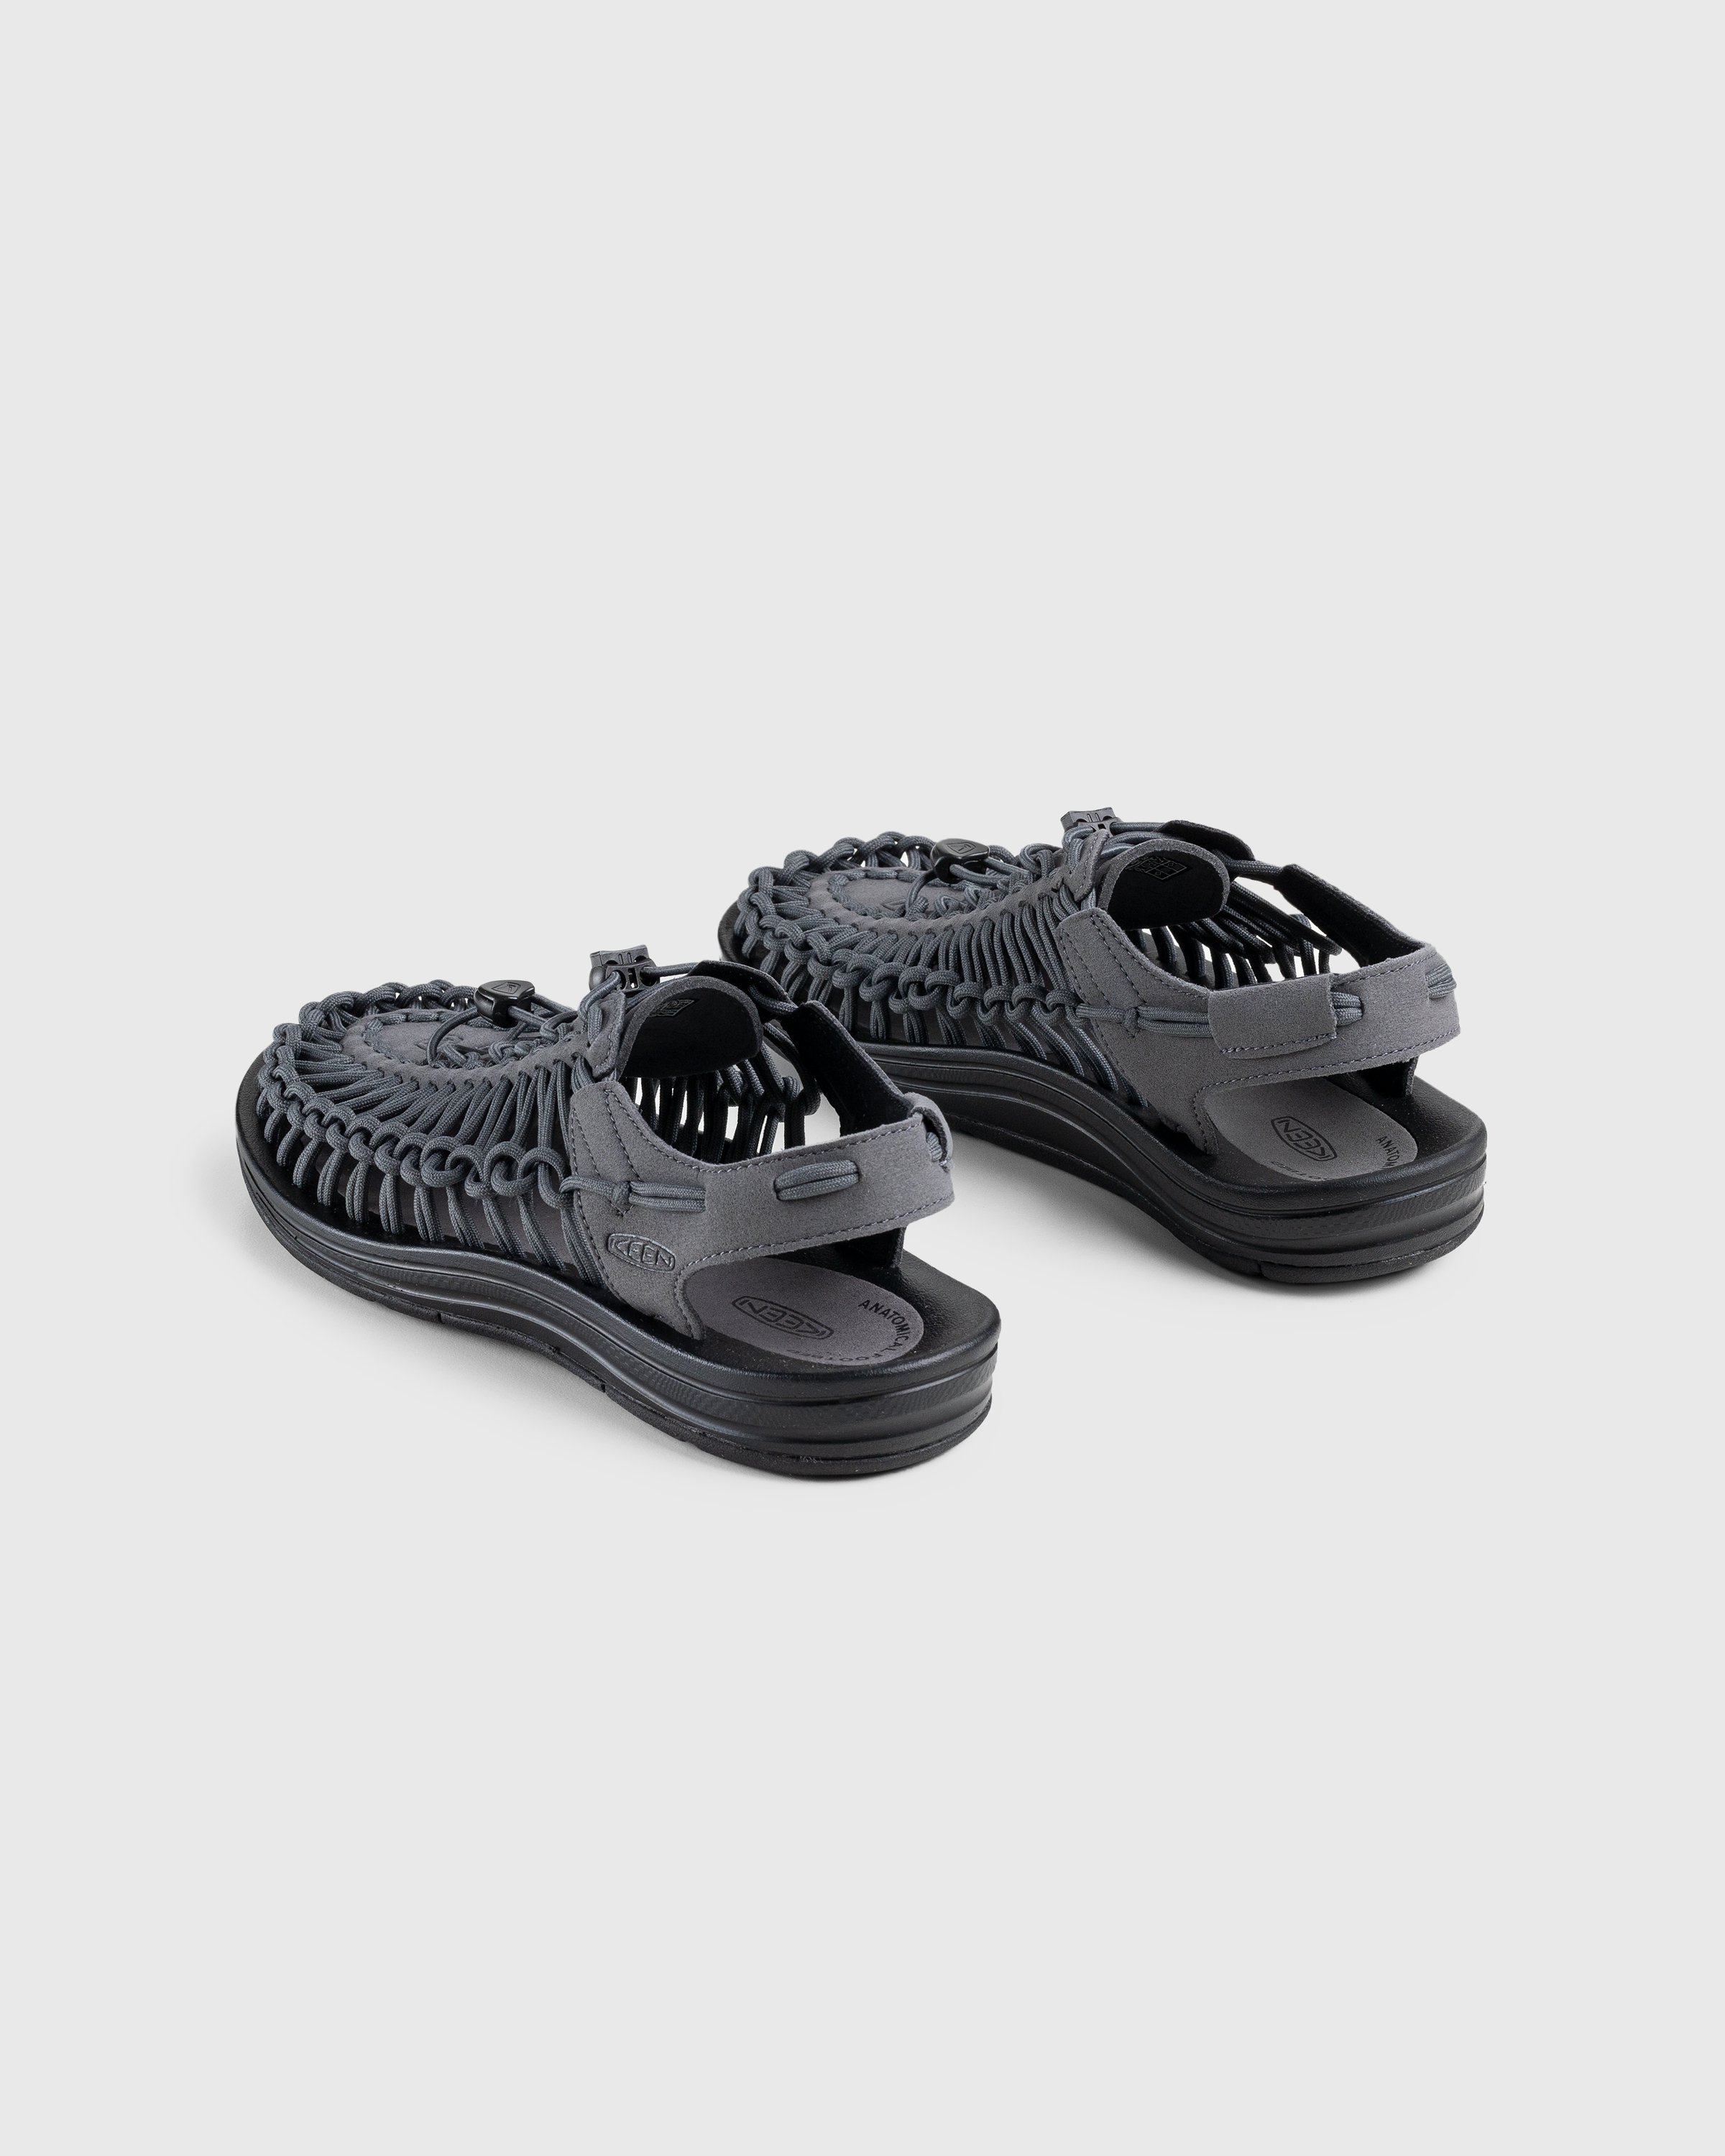 Keen - Uneek Magnet/Black - Footwear - Grey - Image 4